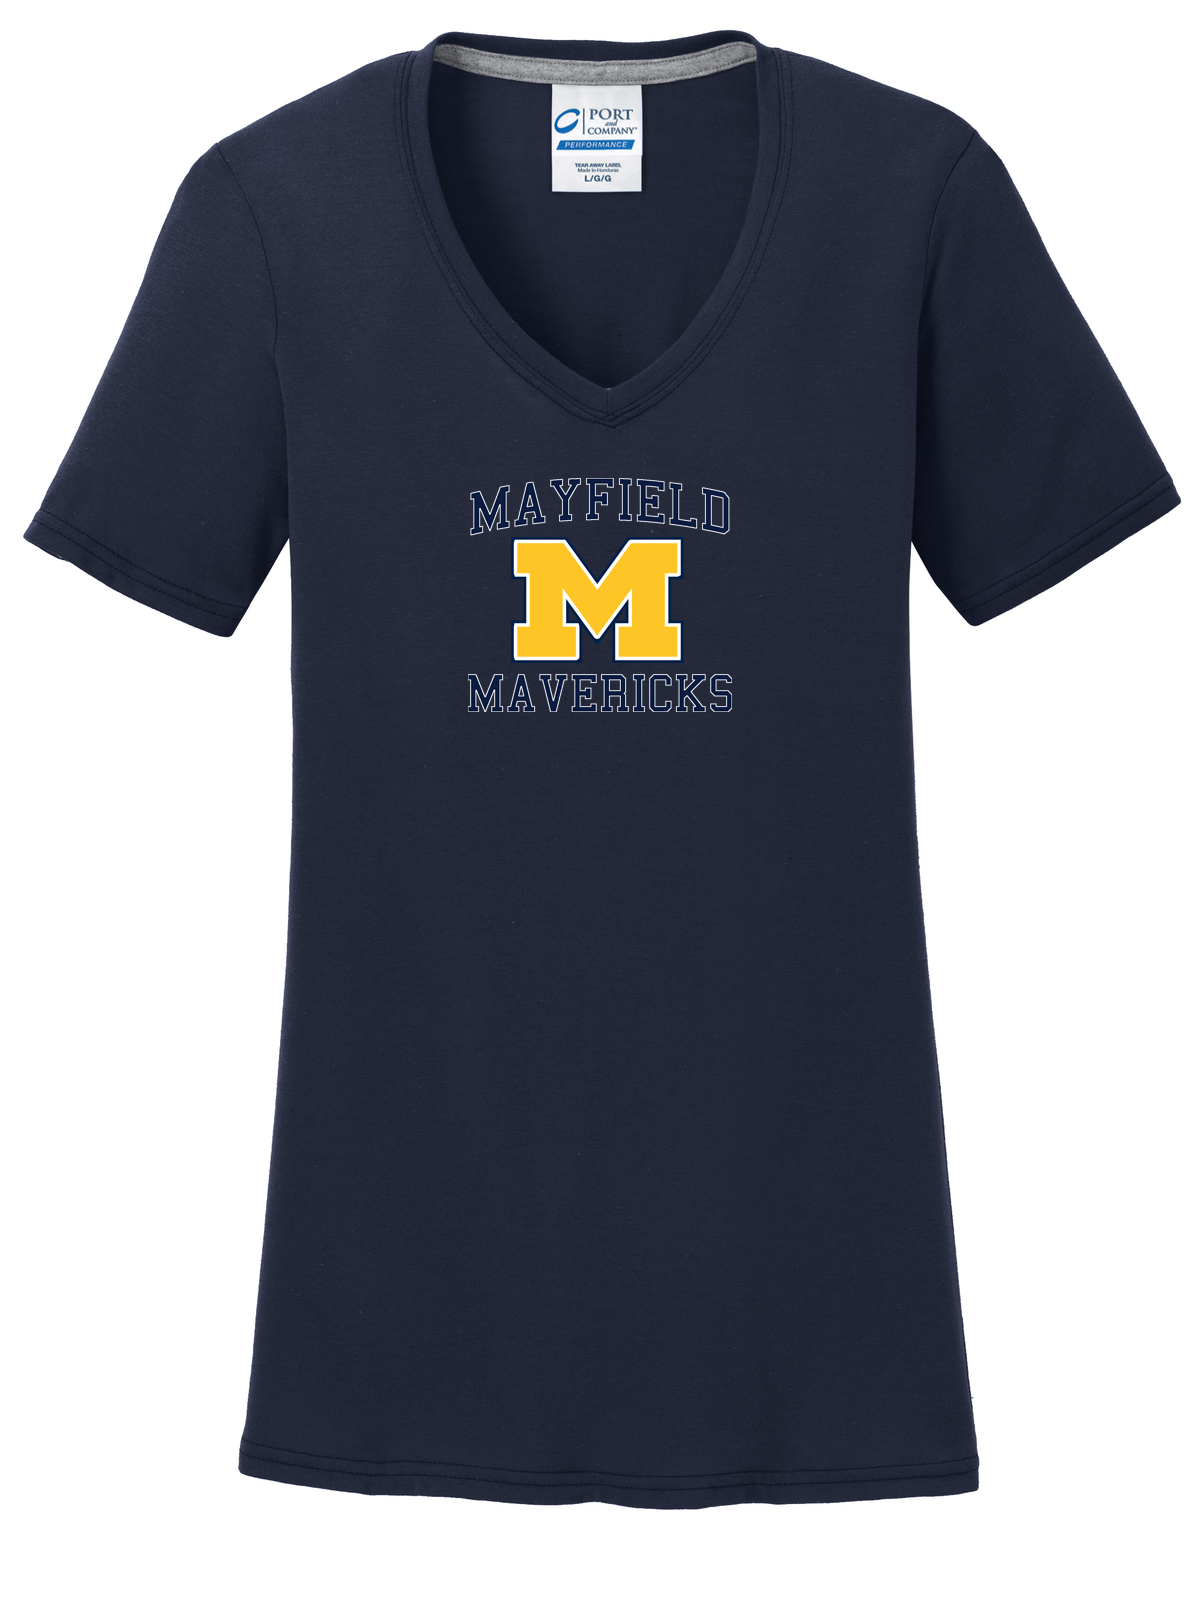 Mayfield Mavericks Women's T-Shirt